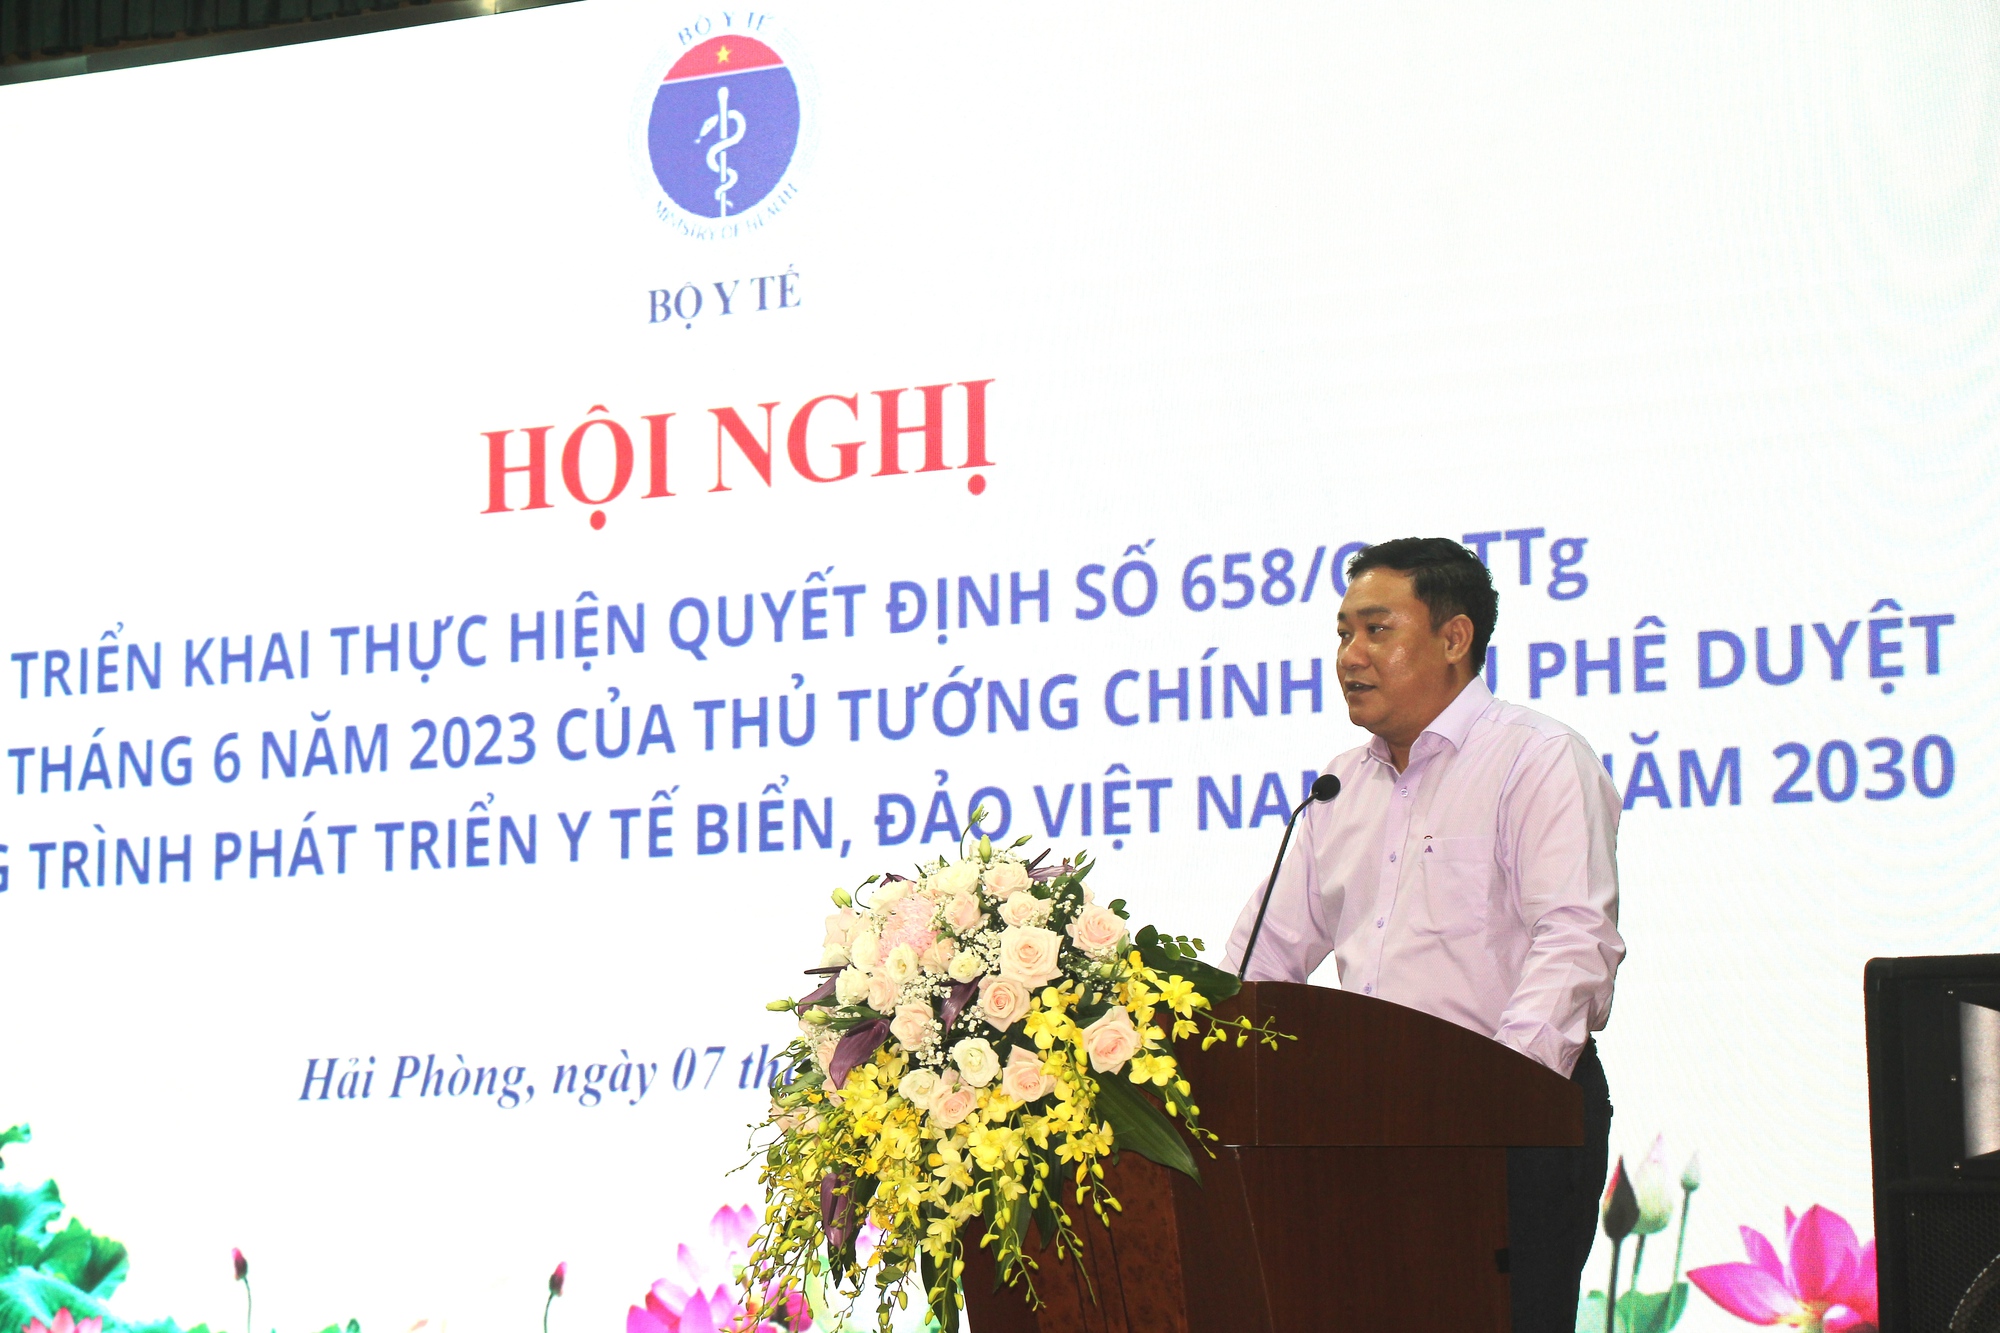 Triển khai thực hiện chương trình phát triển y tế biển, đảo Việt Nam: Phải rõ đường đi nước bước ngay từ đầu - Ảnh 5.